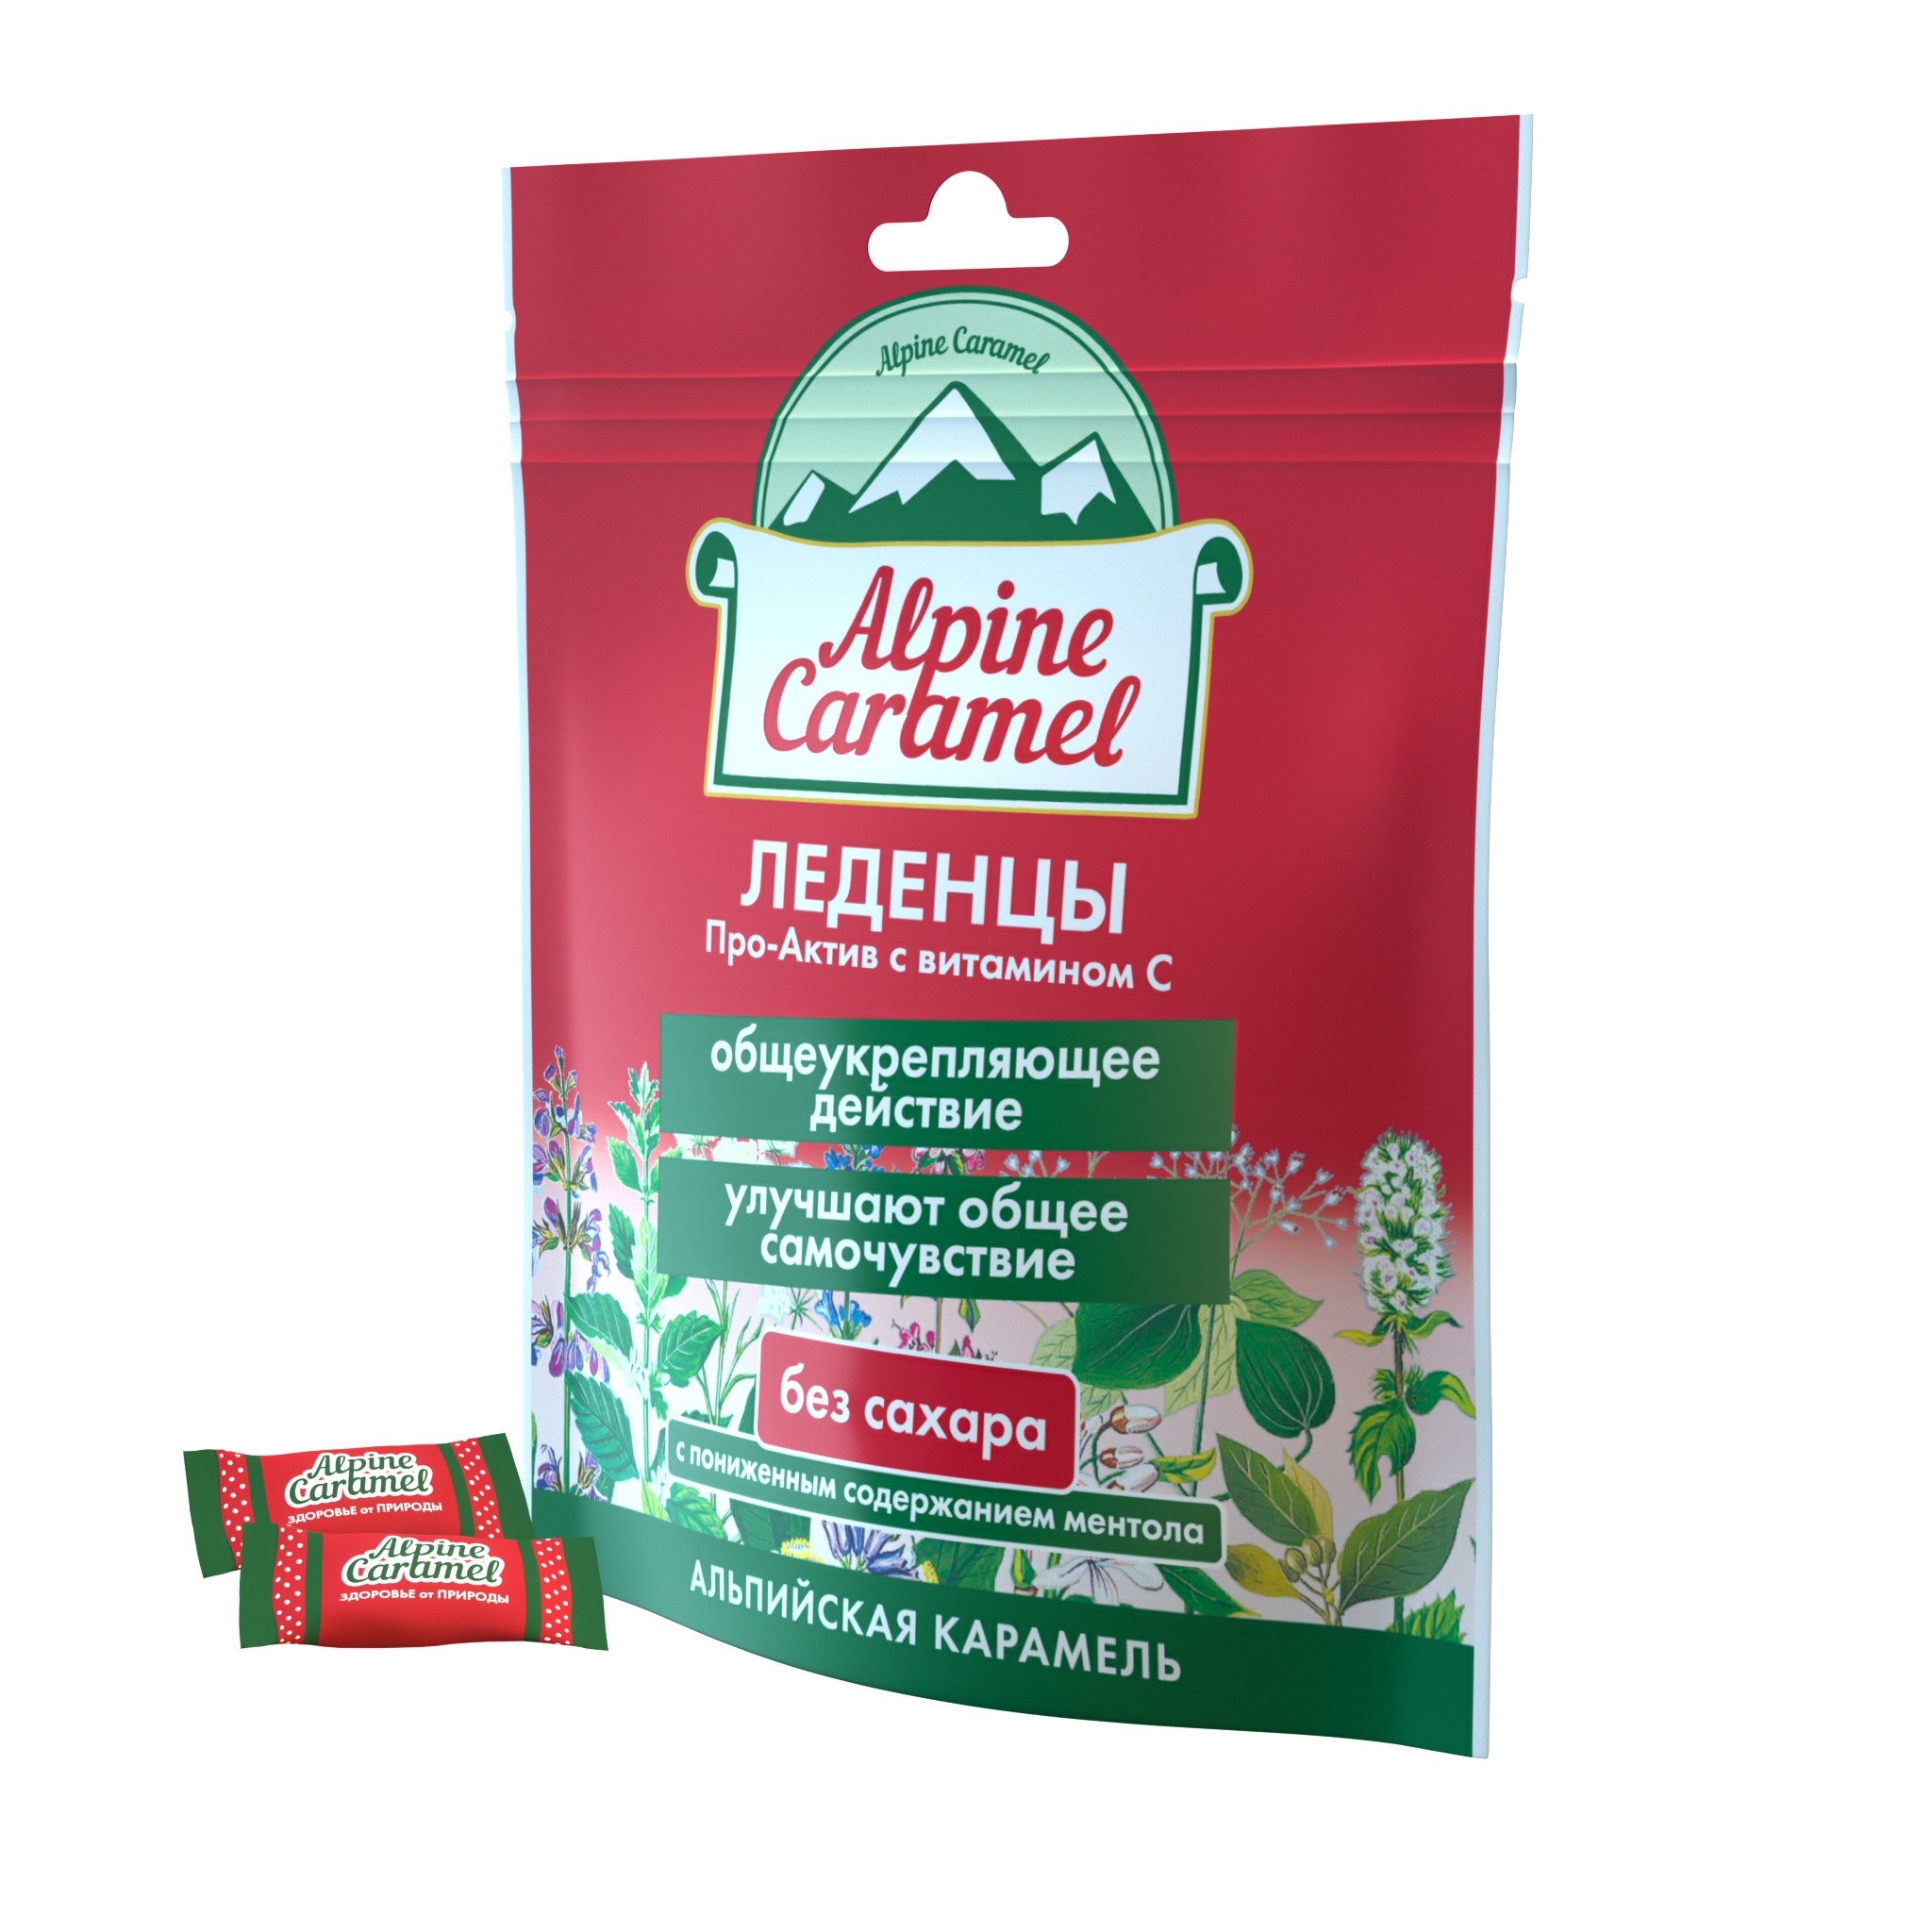 Alpine Caramel Альпийская Карамель Про-Актив леденцы (с витамином С, без сахара), 75 г